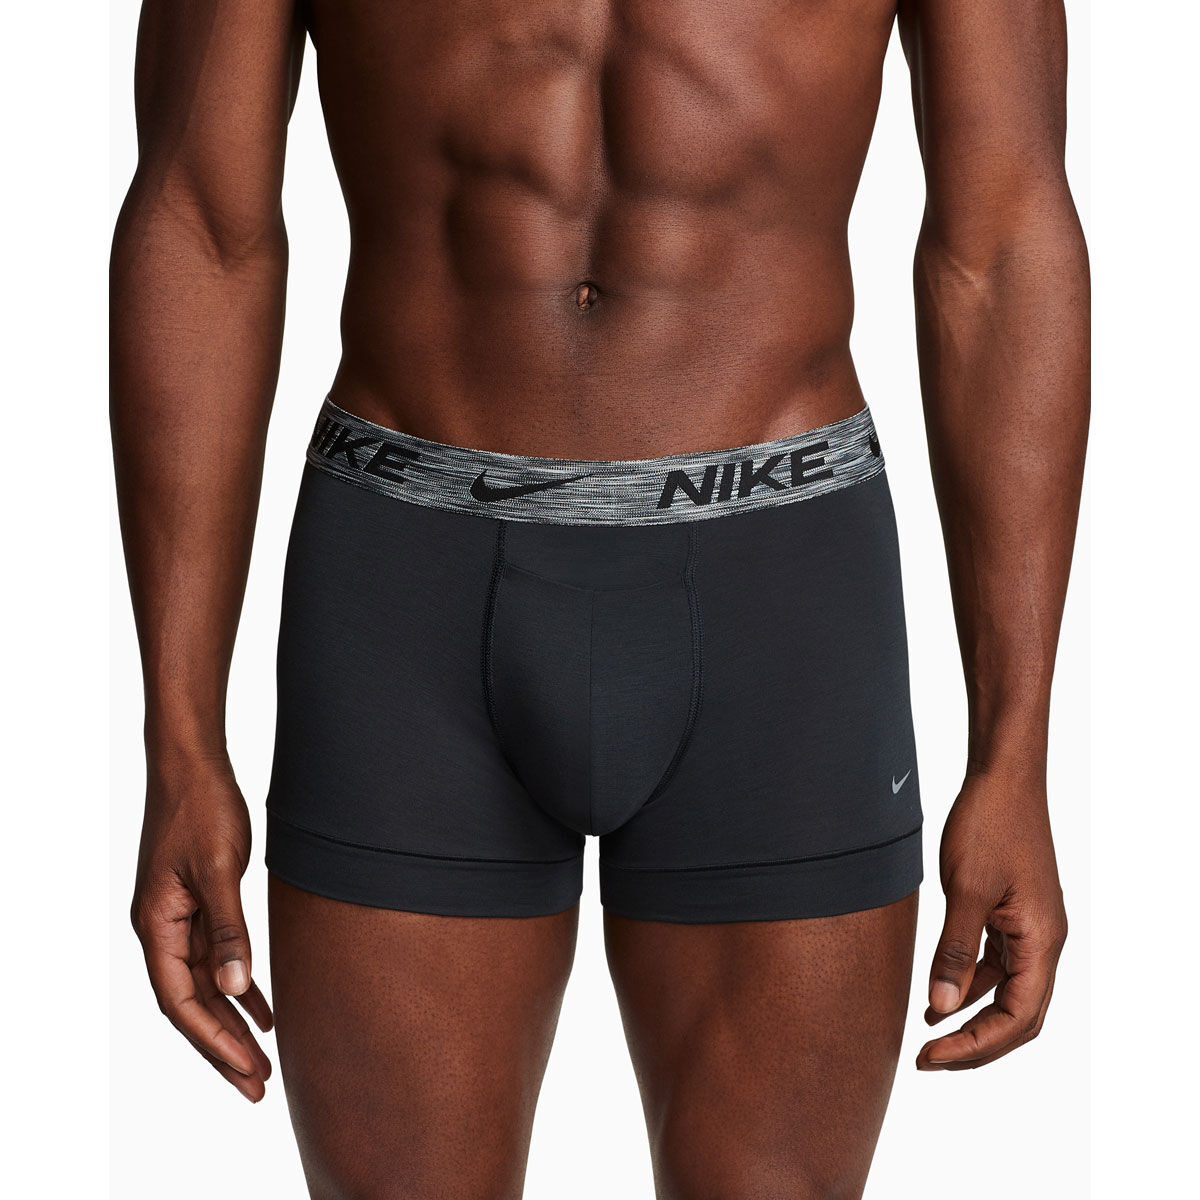 NWT- Nike Dri-Fit Boys Compression Training/Underwear Size S(8-9